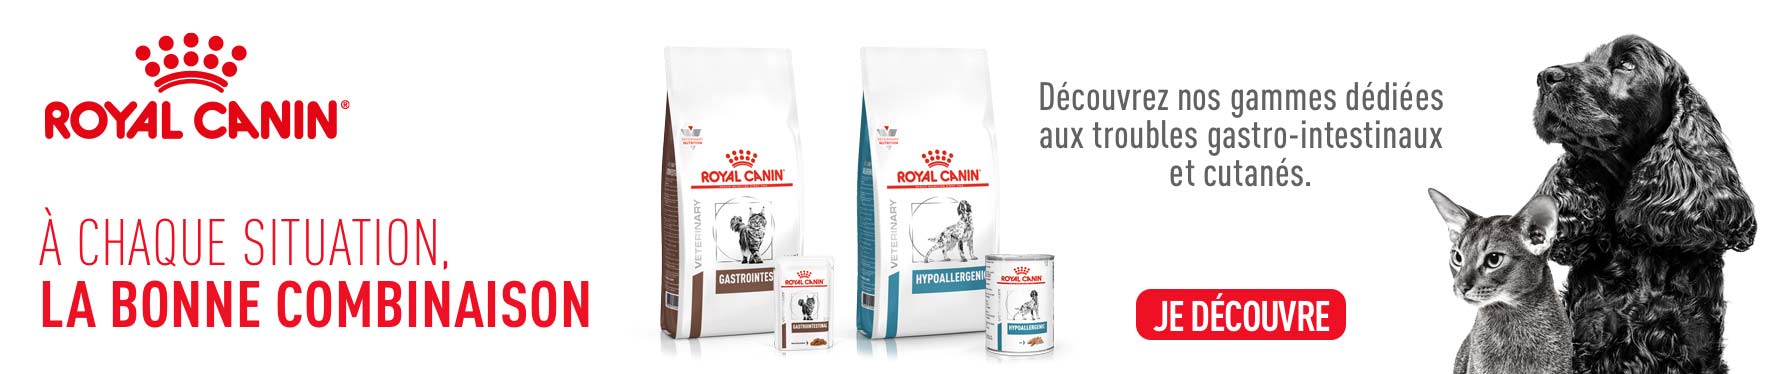 Découvrez les gammes Royal Canin dédiées aux troubles gastro-intestinaux et cutanés.